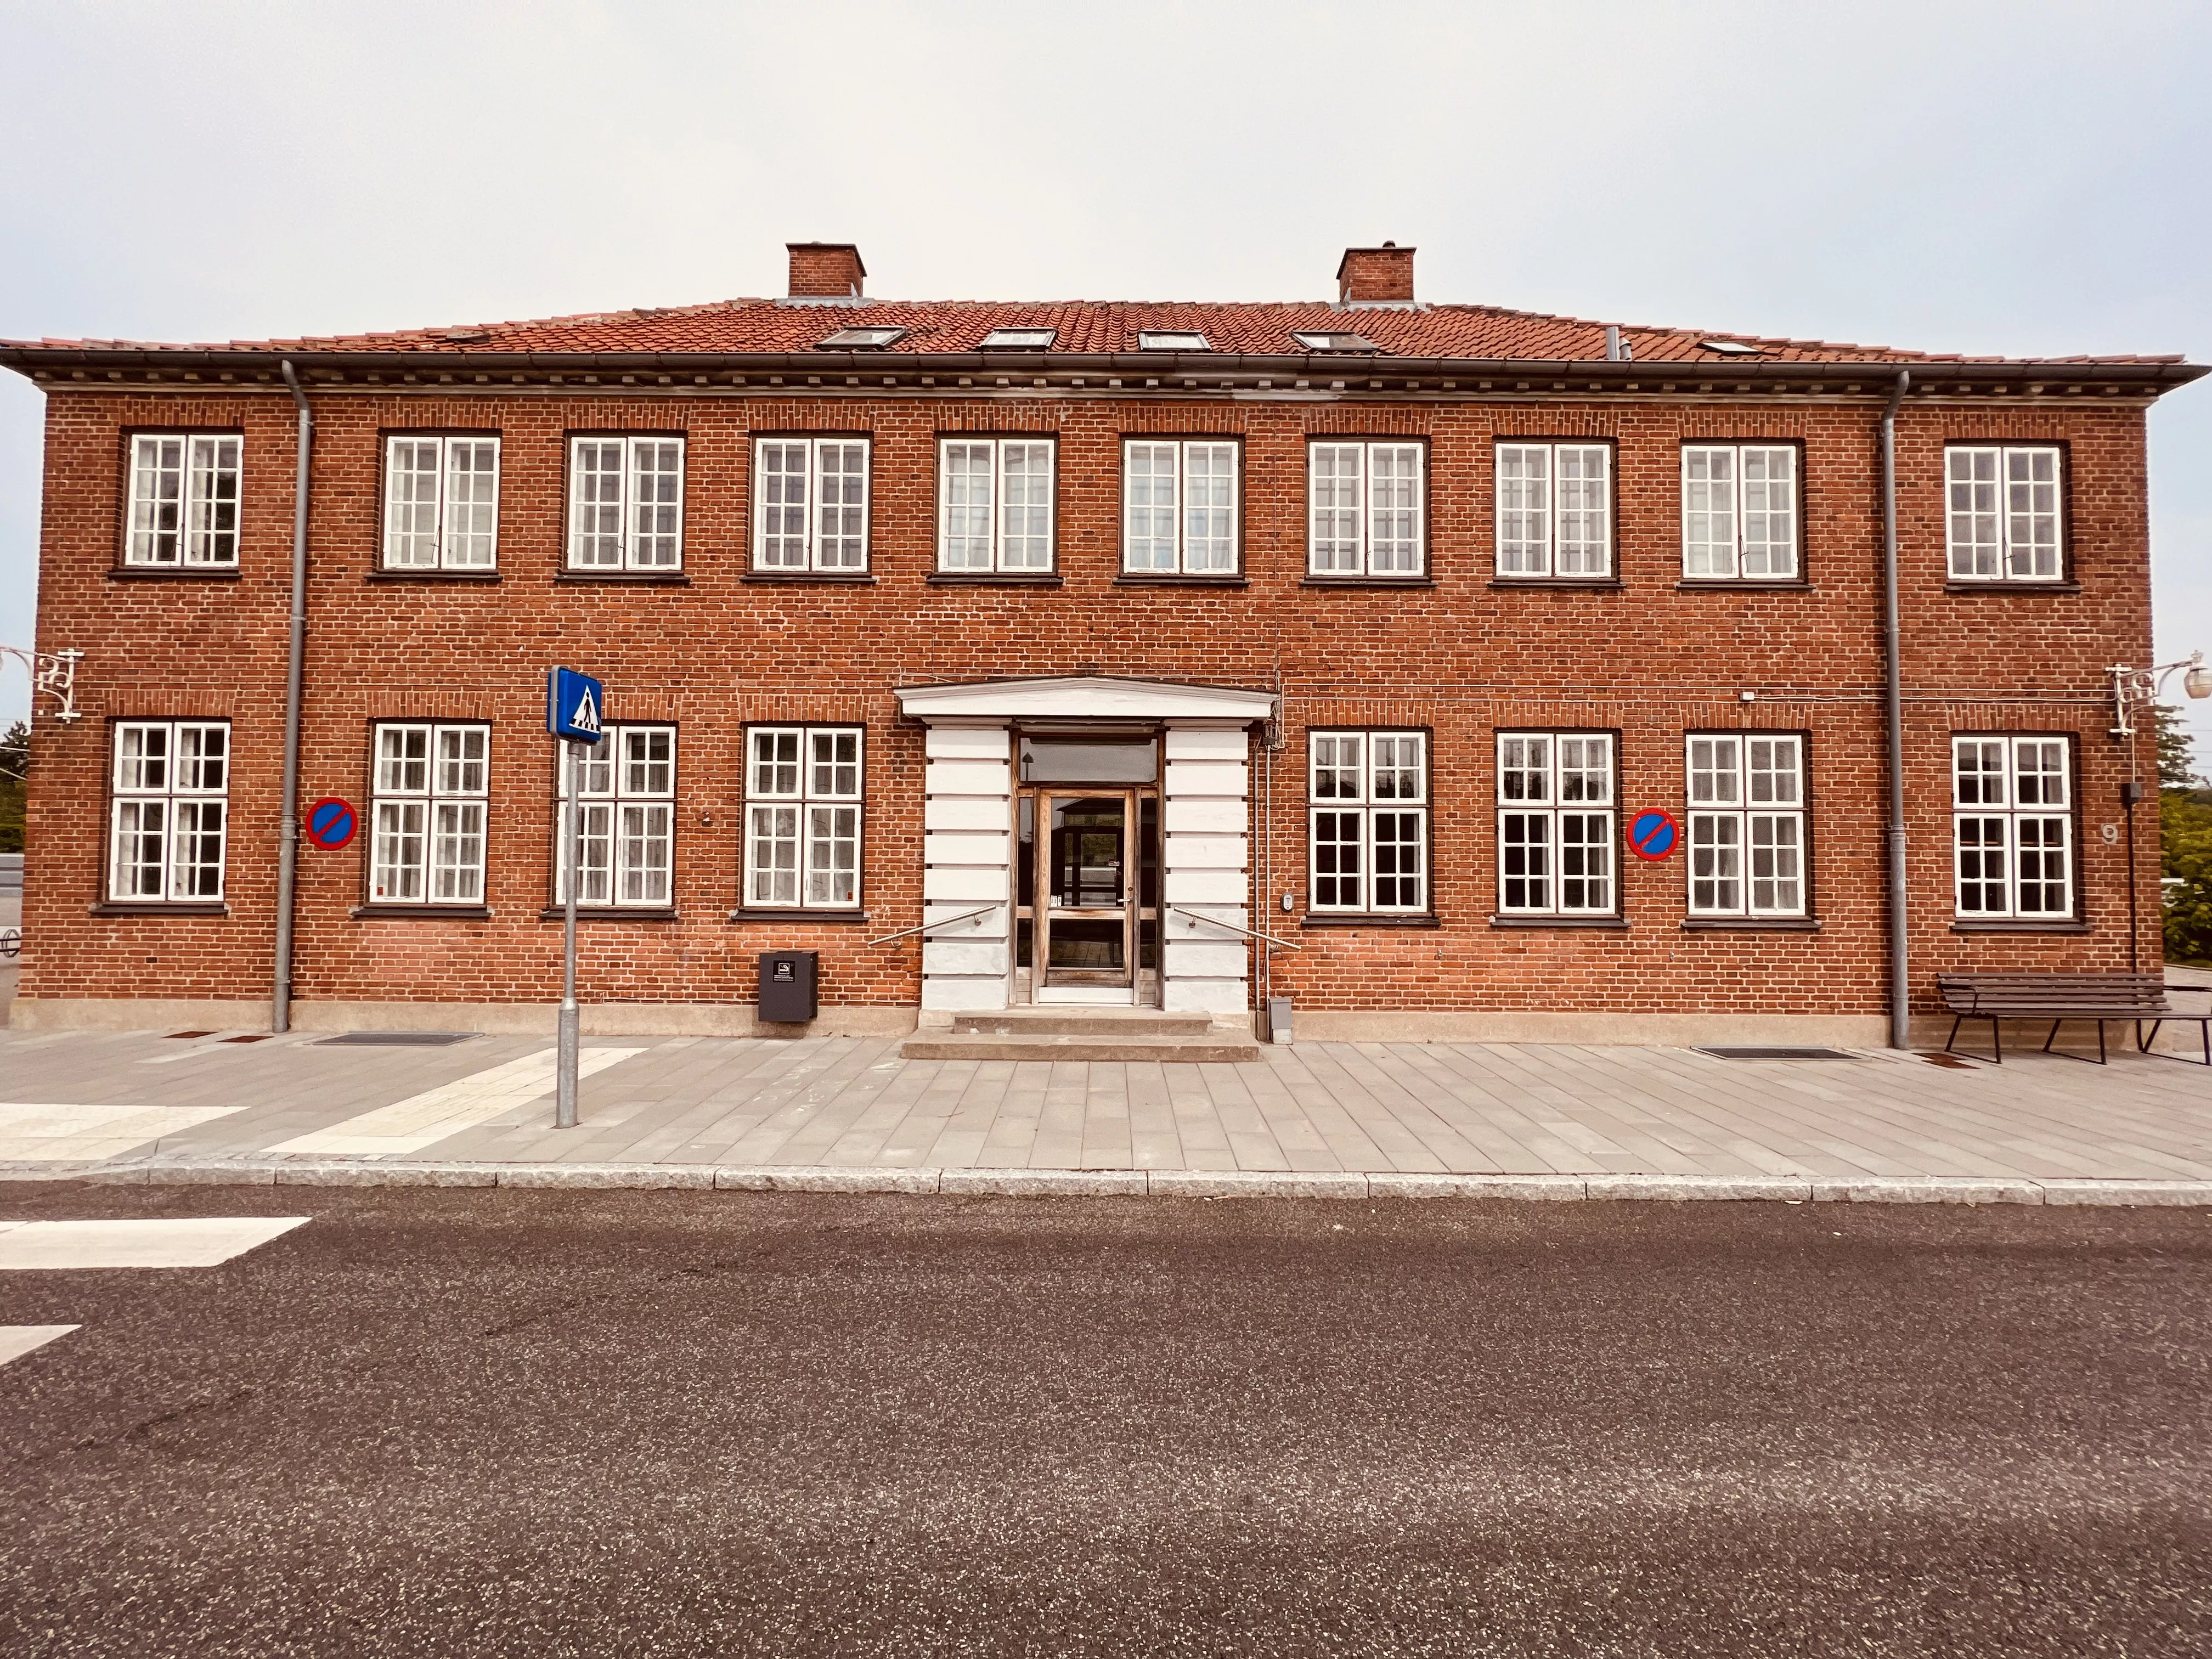 Billede af Glumsø Station.